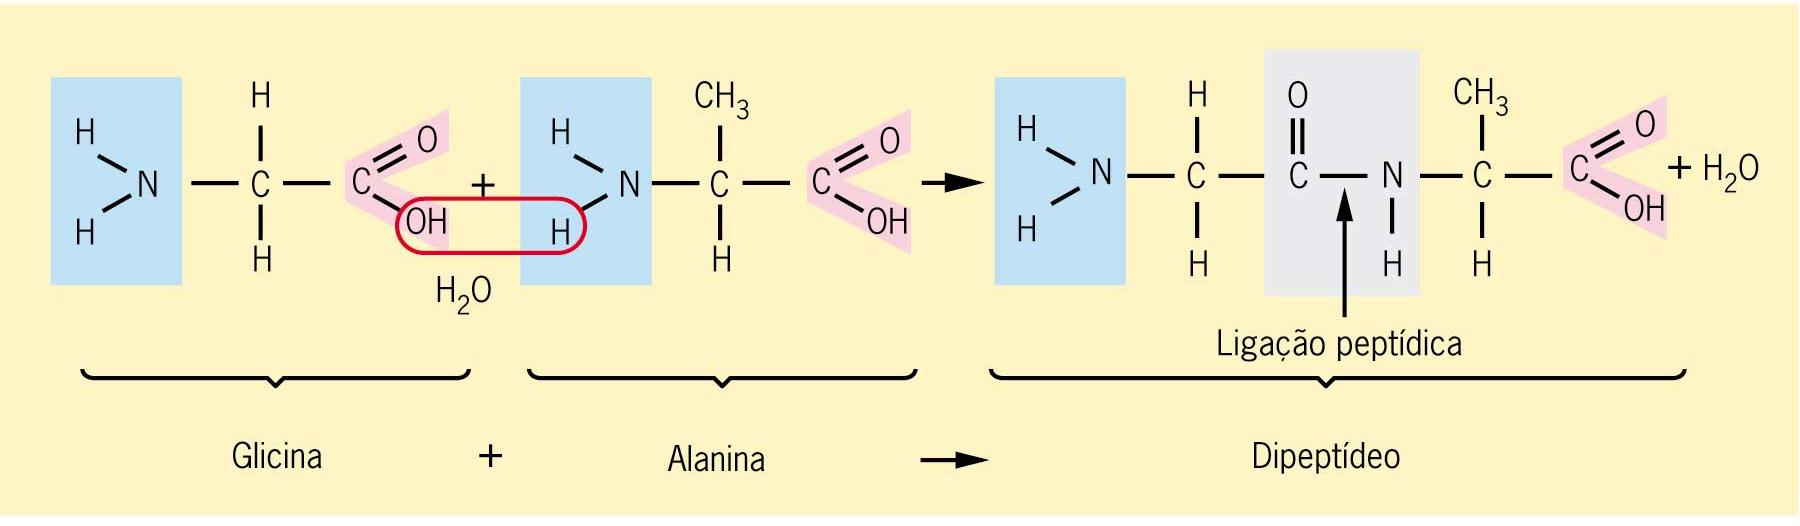 LIGAÇÕES PEPTÍDICAS É a ligação covalente entre dois aminoácidos com a liberação de uma molécula de água.